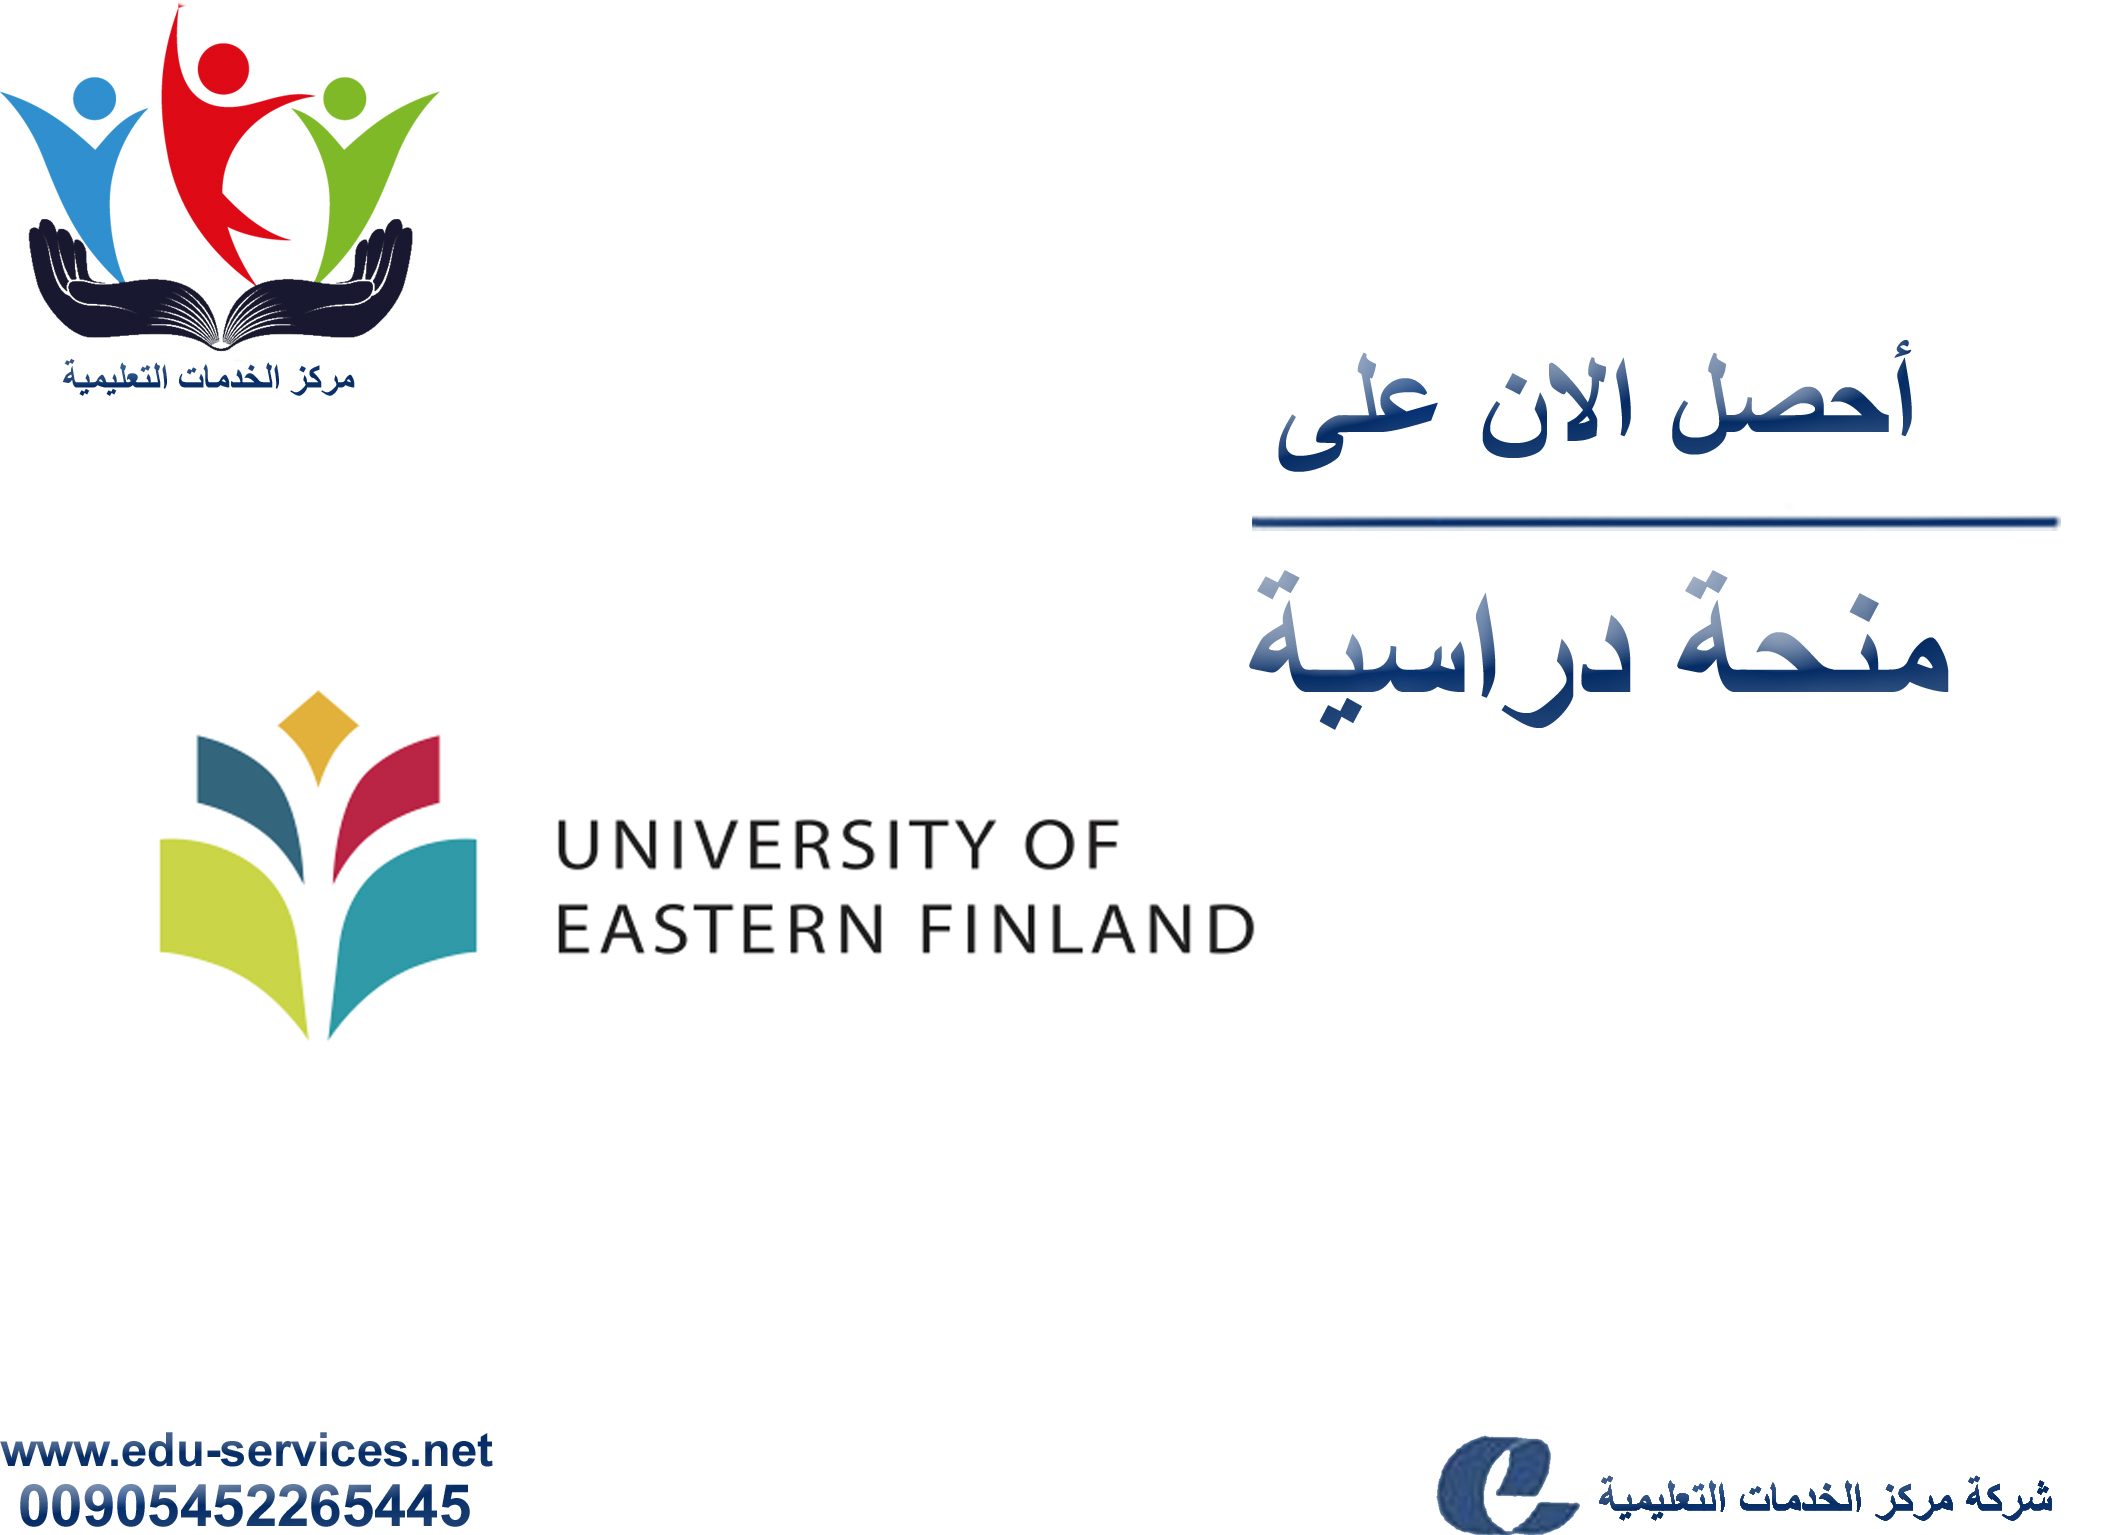 منح دراسية لدرجة الماجستير من UEF في فنلندا للعام 2018-2019